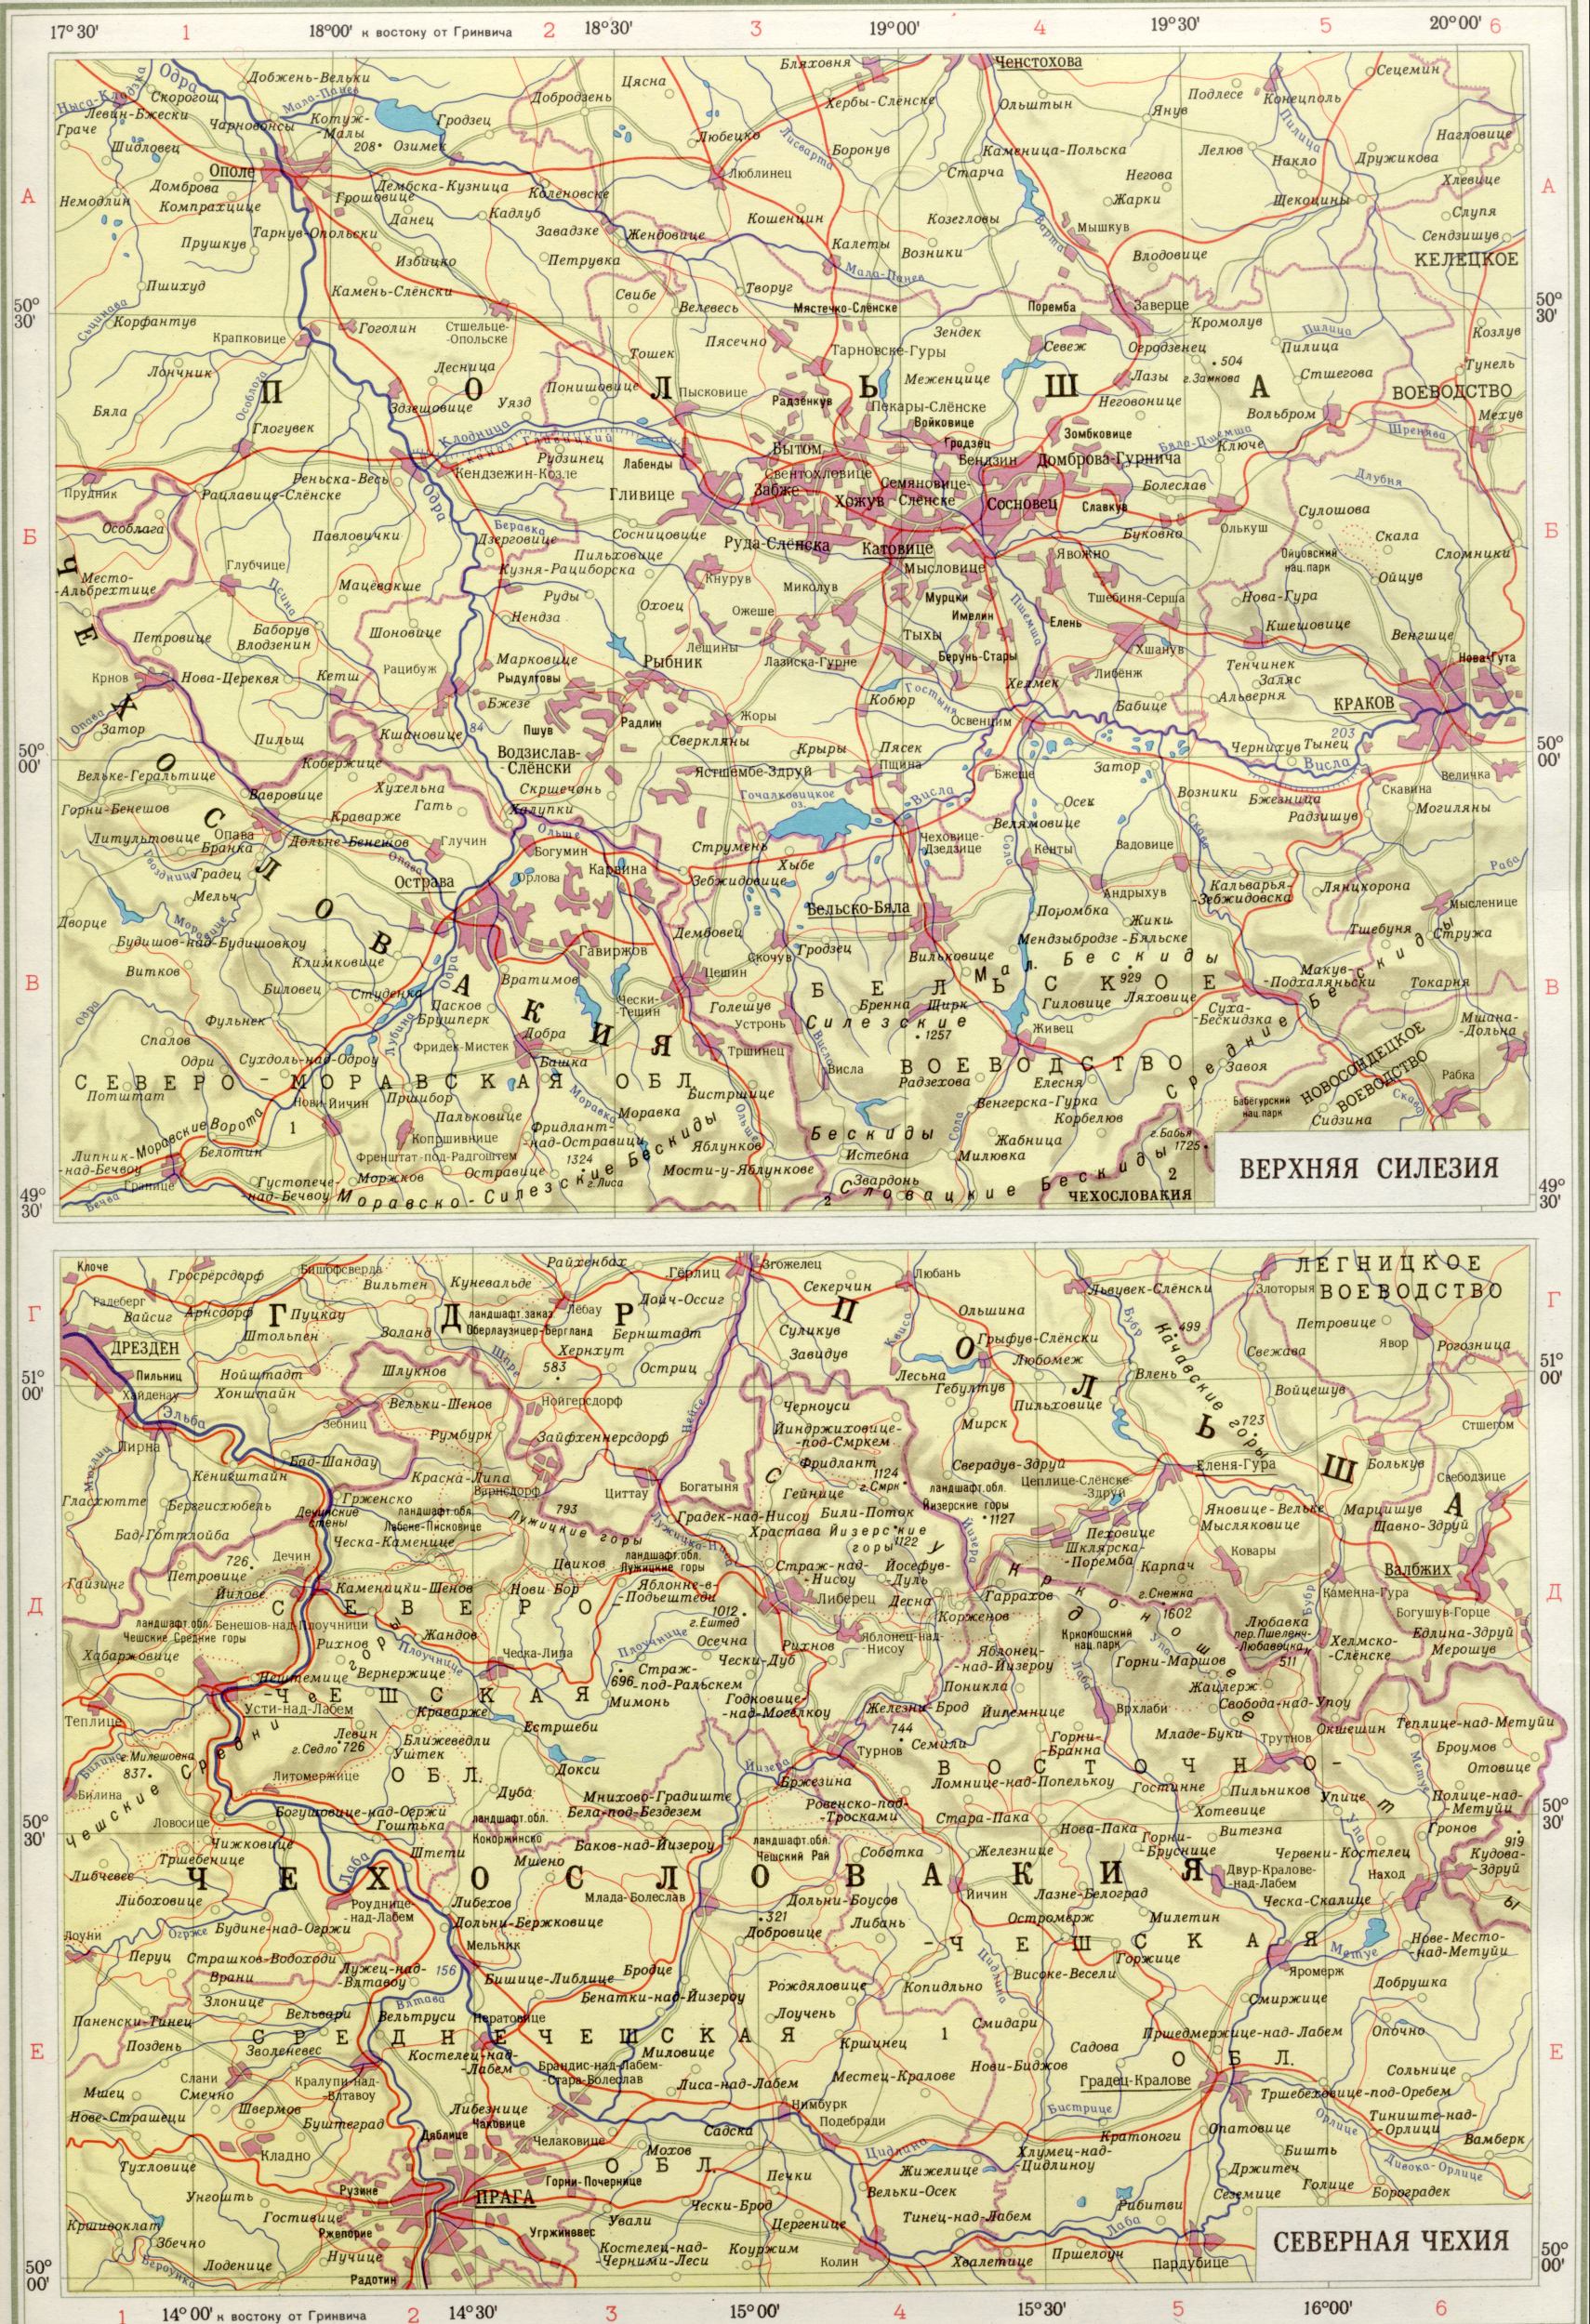 Karte von Nordböhmen 1988 Oberschlesien 1cm = 10km. Download der kostenlosen politische Landkarte Europas